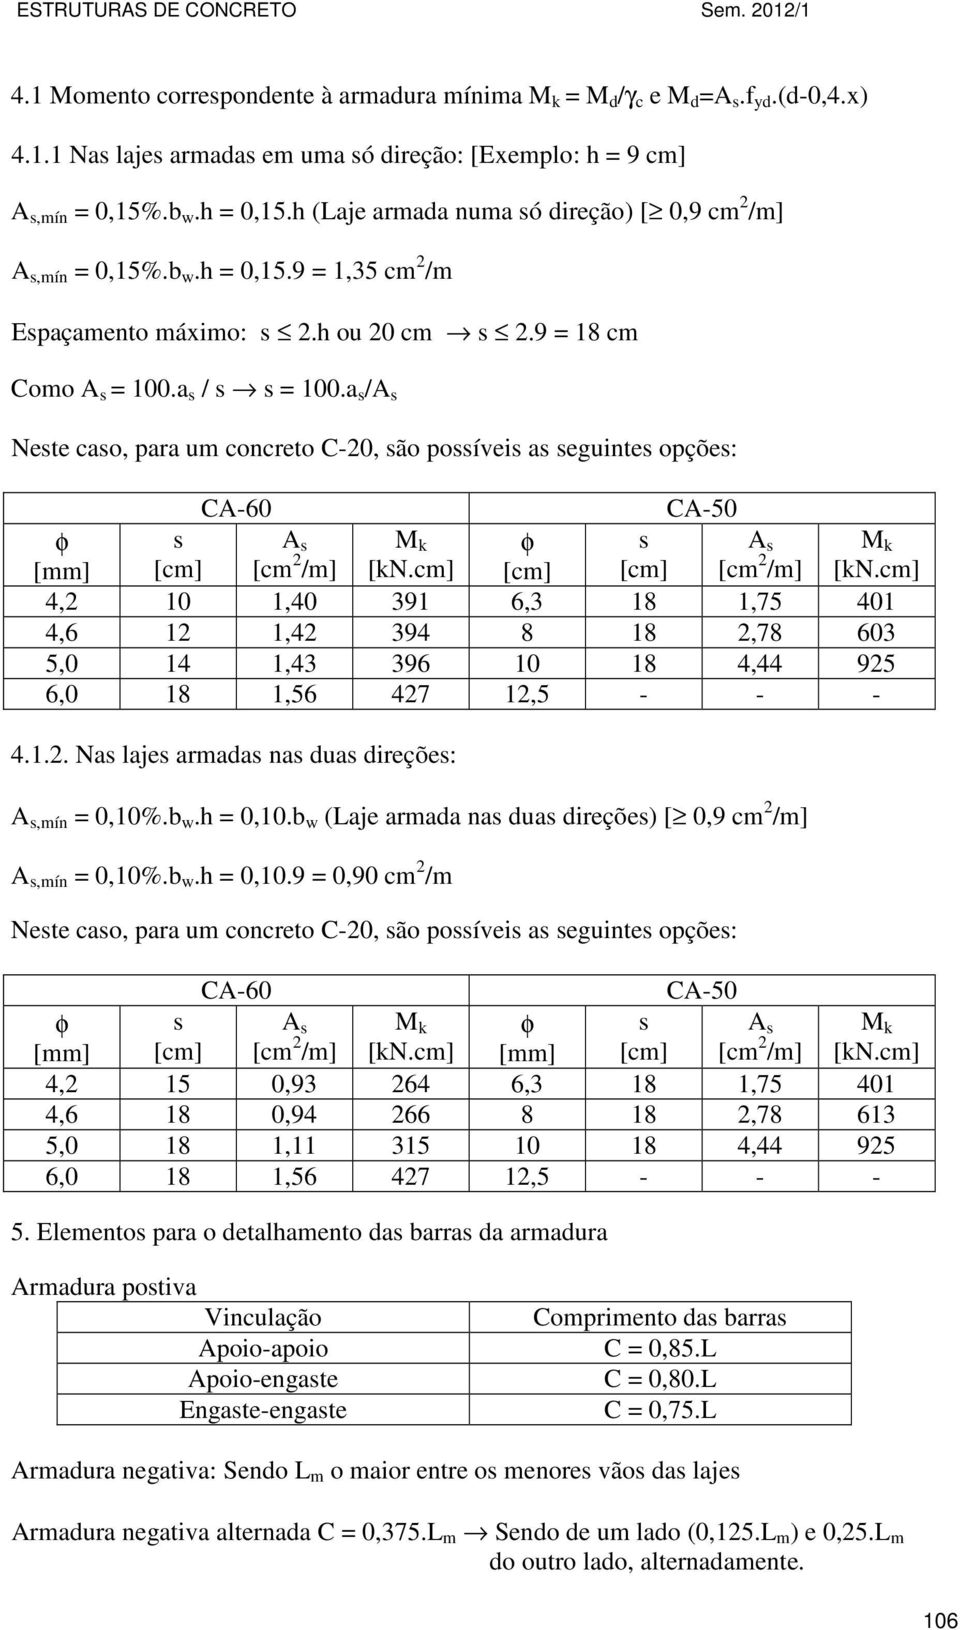 a s /A s Neste caso, para um concreto C-20, são possíveis as seguintes opções: CA-60 CA-50 φ [mm] s [cm] A s [cm 2 /m] M k [kn.cm] φ [cm] s [cm] A s [cm 2 /m] M k [kn.